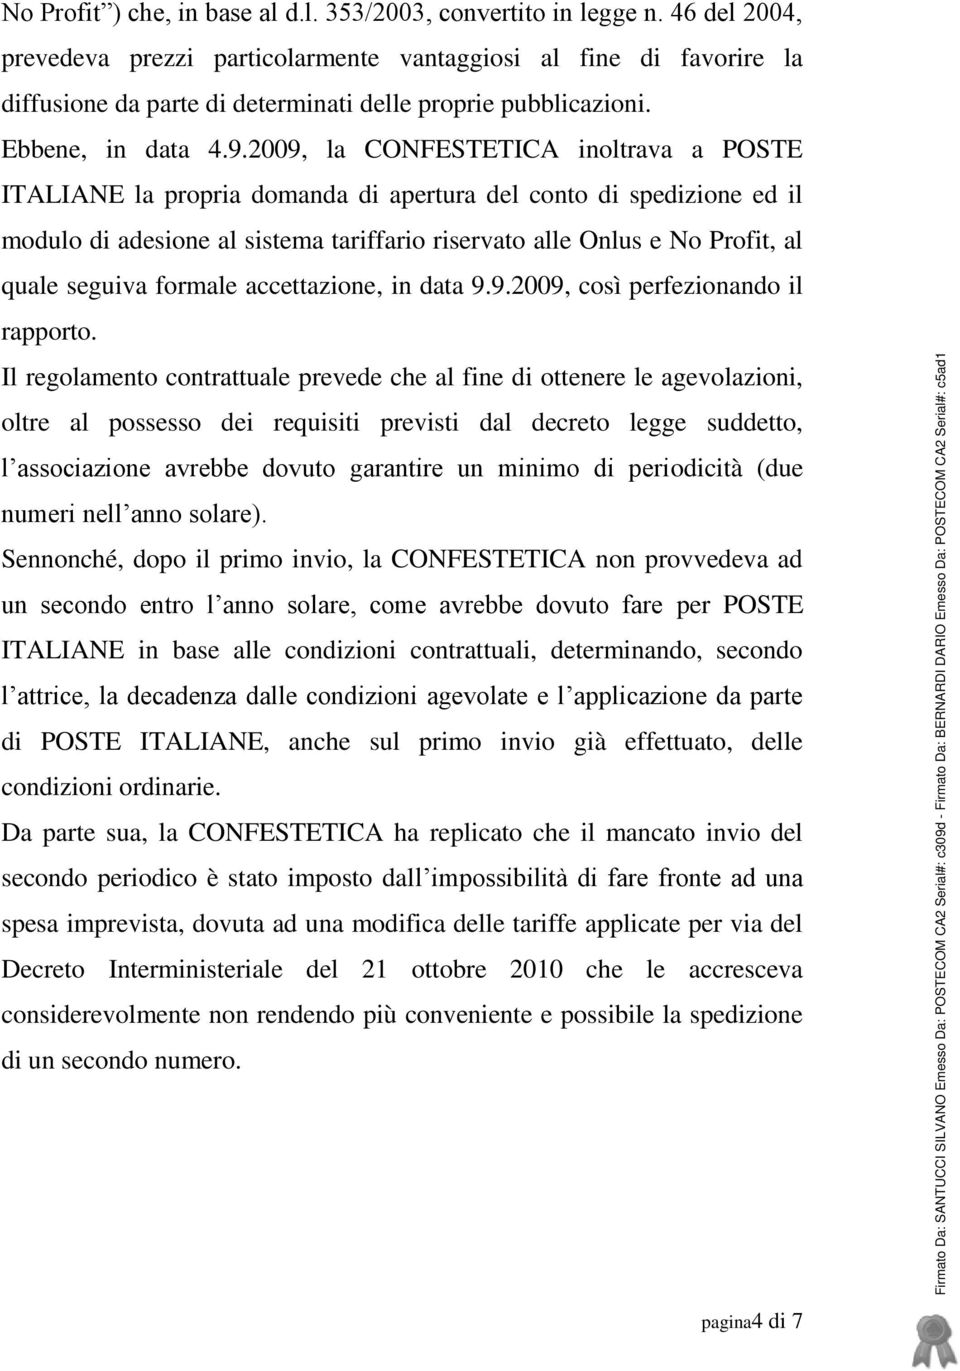 2009, la CONFESTETICA inoltrava a POSTE ITALIANE la propria domanda di apertura del conto di spedizione ed il modulo di adesione al sistema tariffario riservato alle Onlus e No Profit, al quale